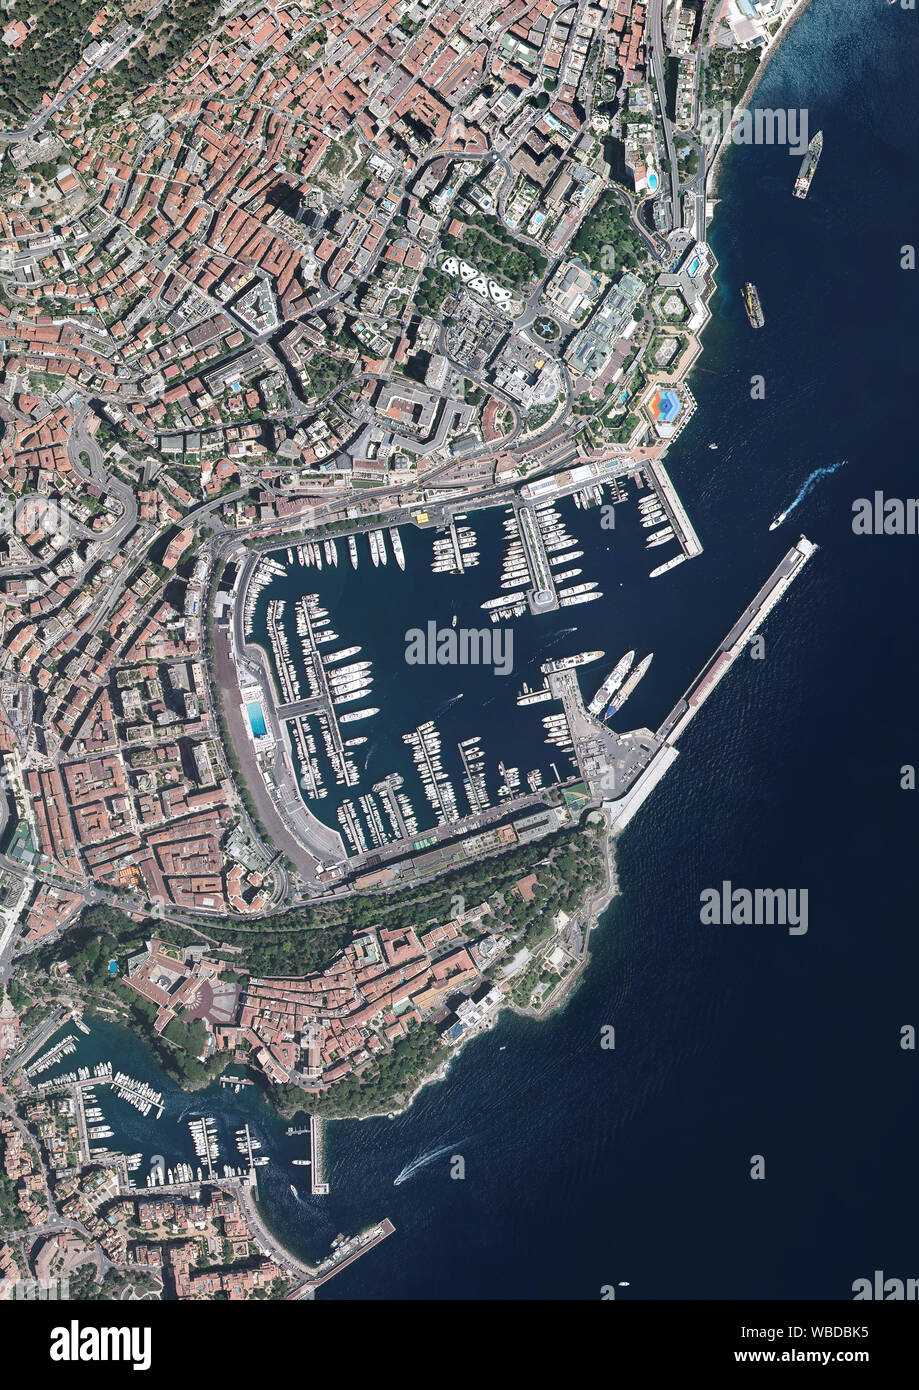 Fotografia aerea della città di Monaco e Porto Ercole. Immagine presa nel 2017. Foto Stock